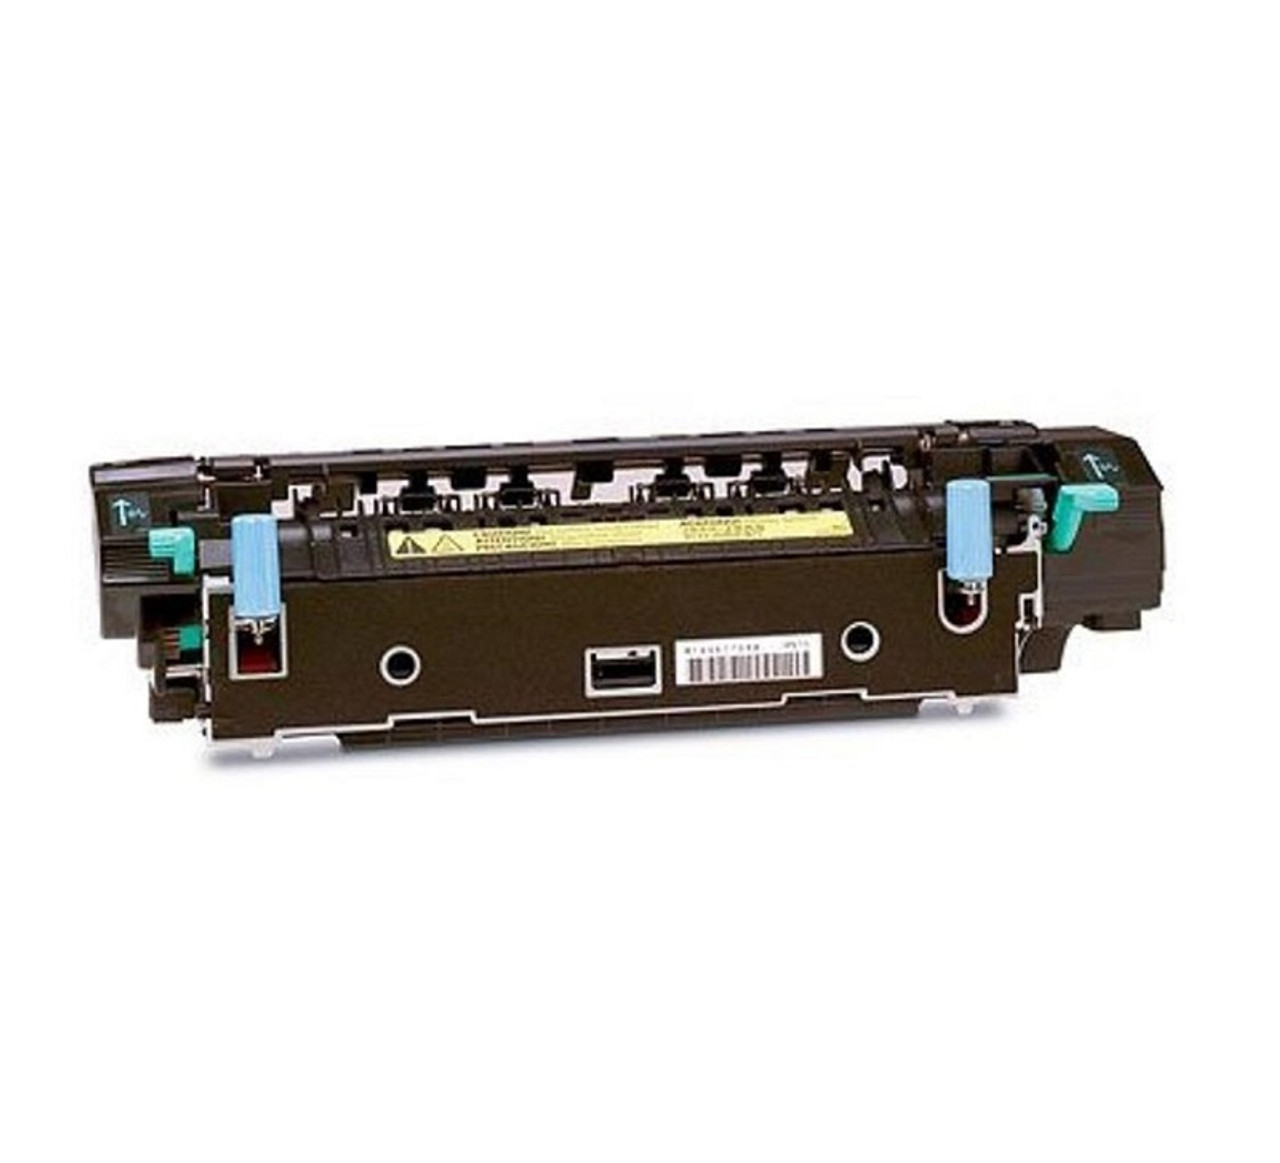 RG5-4132 -HP Fuser Assembly (110V) for LaserJet 2100 Series Printer